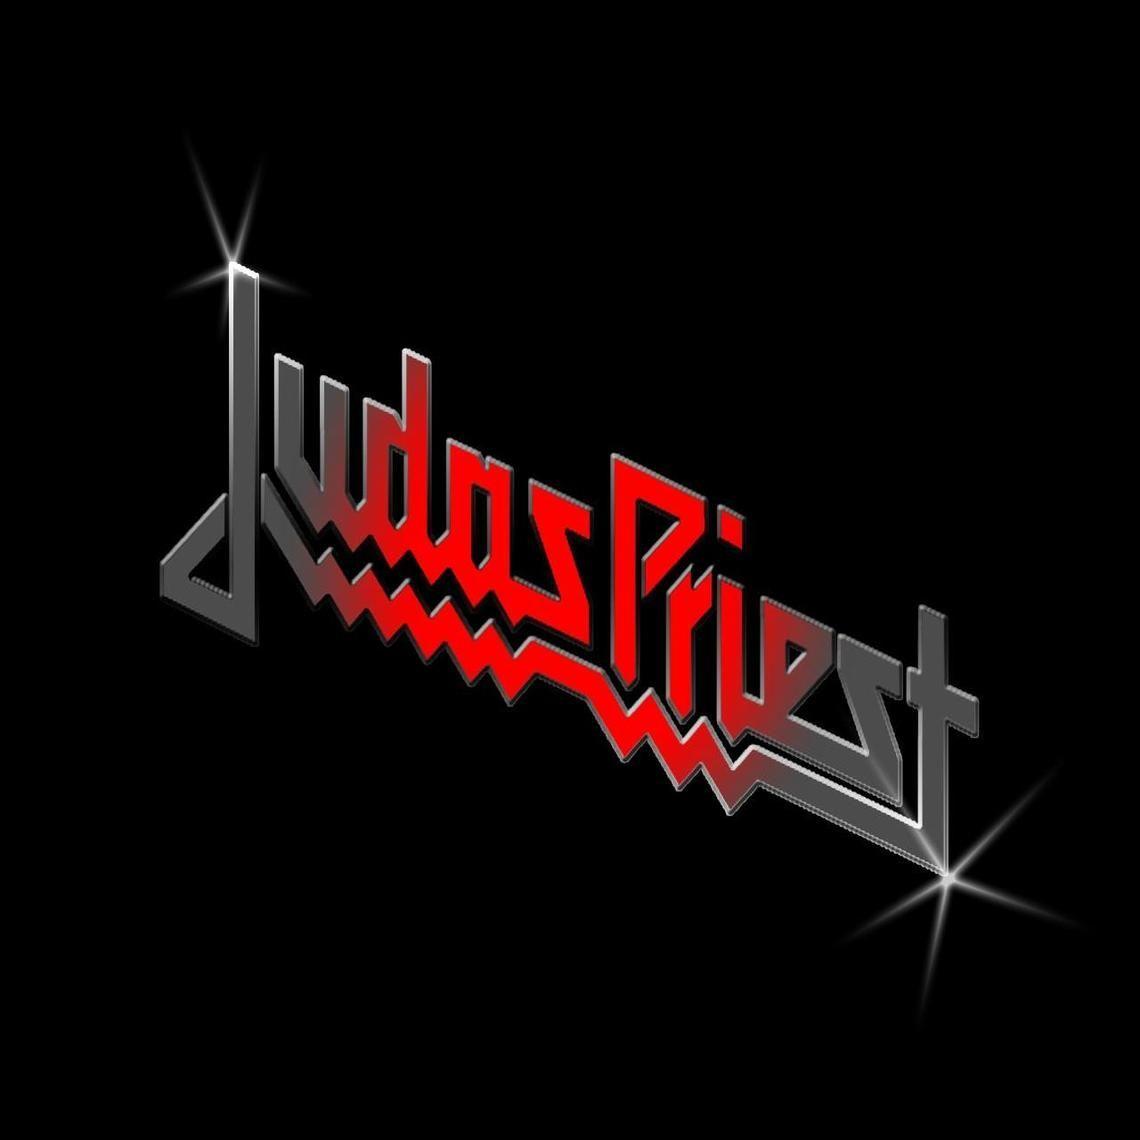 Judas Priest Logo - Judas Priest Logo. JUDAS PRIEST. Judas Priest, Priest, Metallica